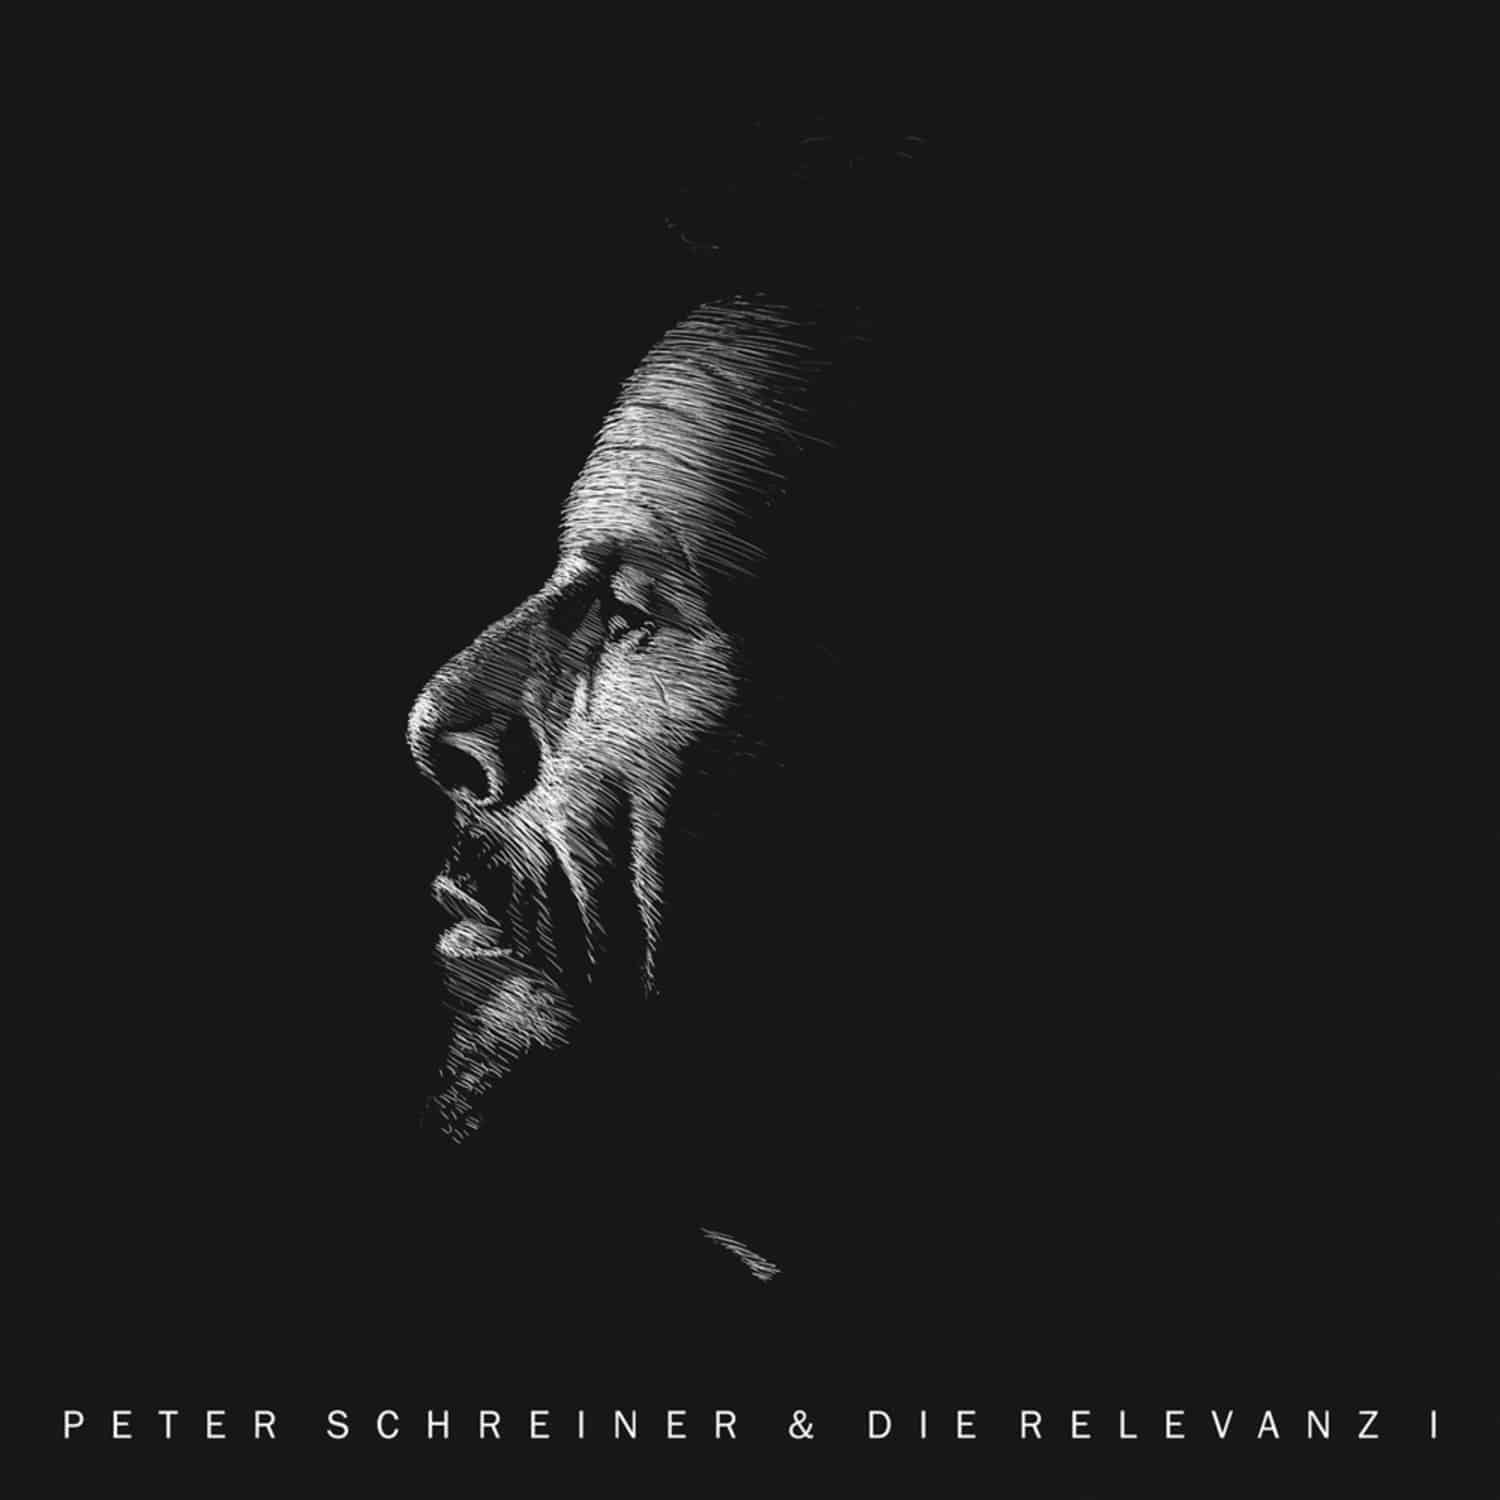 Peter Schreiner & Die Relevanz - PETER SCHREINER & DIE RELEVANZ I 